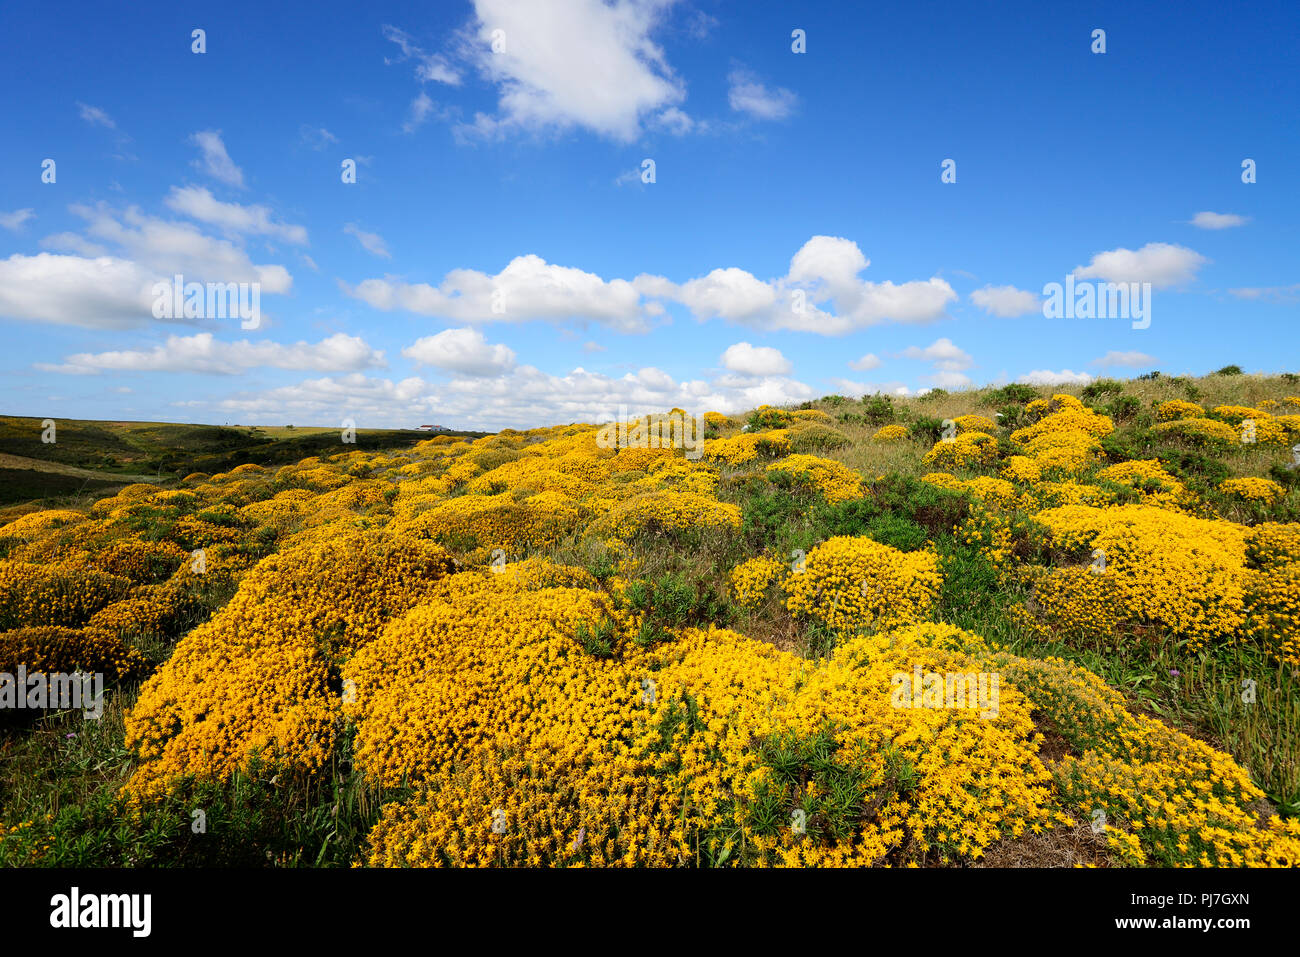 Western gorse in blossom. Parque Natural do Sudoeste Alentejano e Costa Vicentina, the wildest atlantic coast in Europe. Algarve, Portugal Stock Photo